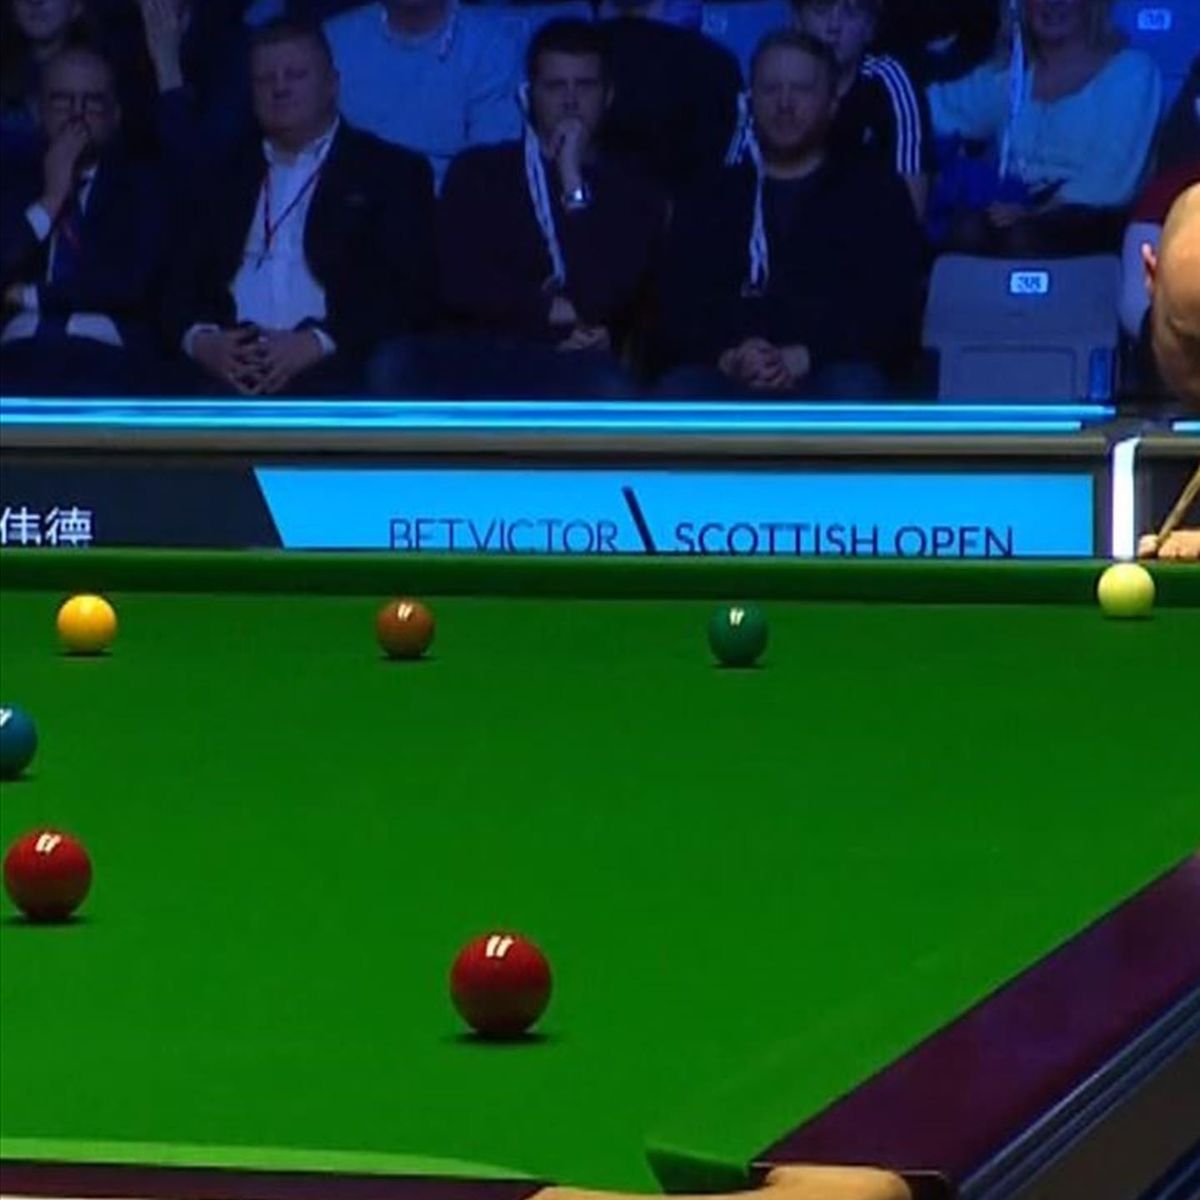 Scottish Open Gary Wilson gibt im Finale gegen Joe OConnor den Ton an - Engländer vollendet mit voller Wucht - Snooker Video